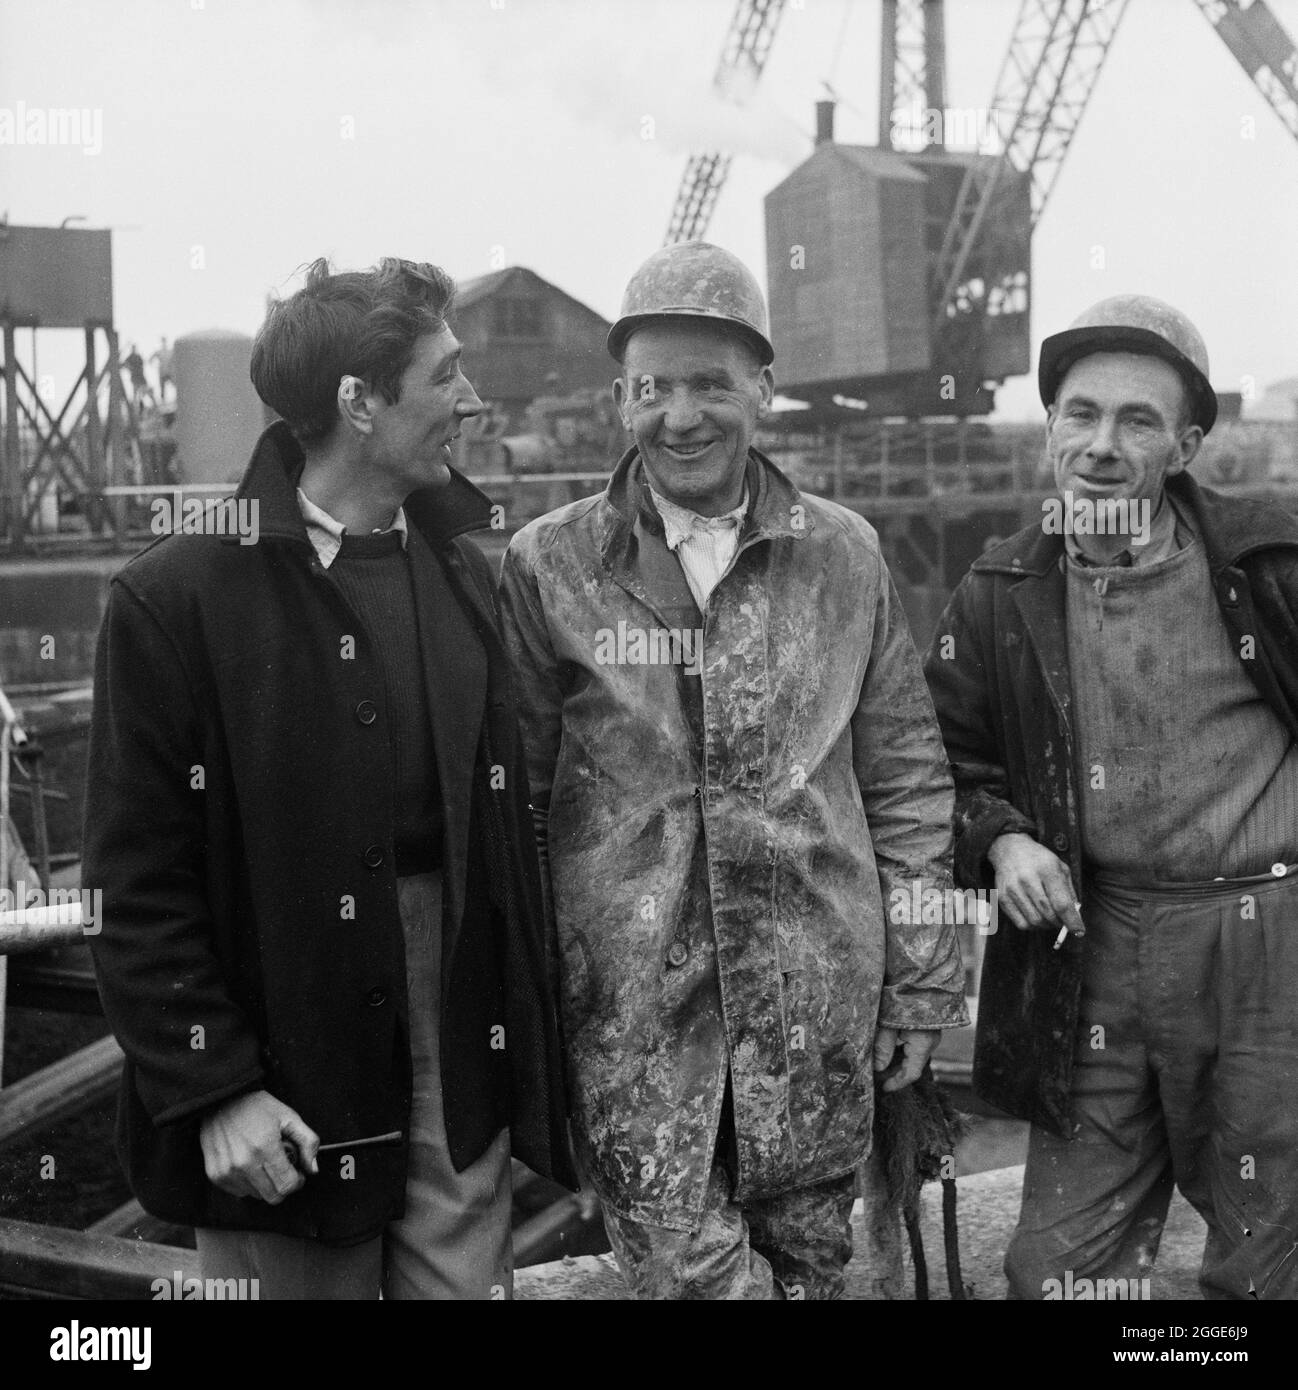 Ein Gruppenportrait von drei Banden, S. Jones, T. Cummersky und M. Ryan, die am Portishead Dock-Projekt beschäftigt sind. Eine ausgeschnittene Version dieses Bildes wurde im Abschnitt „Menschen“ der Mai 1959-Ausgabe des monatlichen Laing-Newsletters „Team Spirit“ veröffentlicht. Im Jahr 1958 begannen die Sanierungsarbeiten an der Schleuseneinfahrt zum Portishead Dock für die Port of Bristol Authority. Der Eingang der Schleuse war durch eine Abschur- und Wellenbewegung beschädigt worden und musste entfernt und erneuert werden, und die vorhandenen Wände wurden untermauert. Gleichzeitig wurden die Arbeiten am letzten Drittel des Kraftwerks Portishead „B“ aufgenommen. Stockfoto